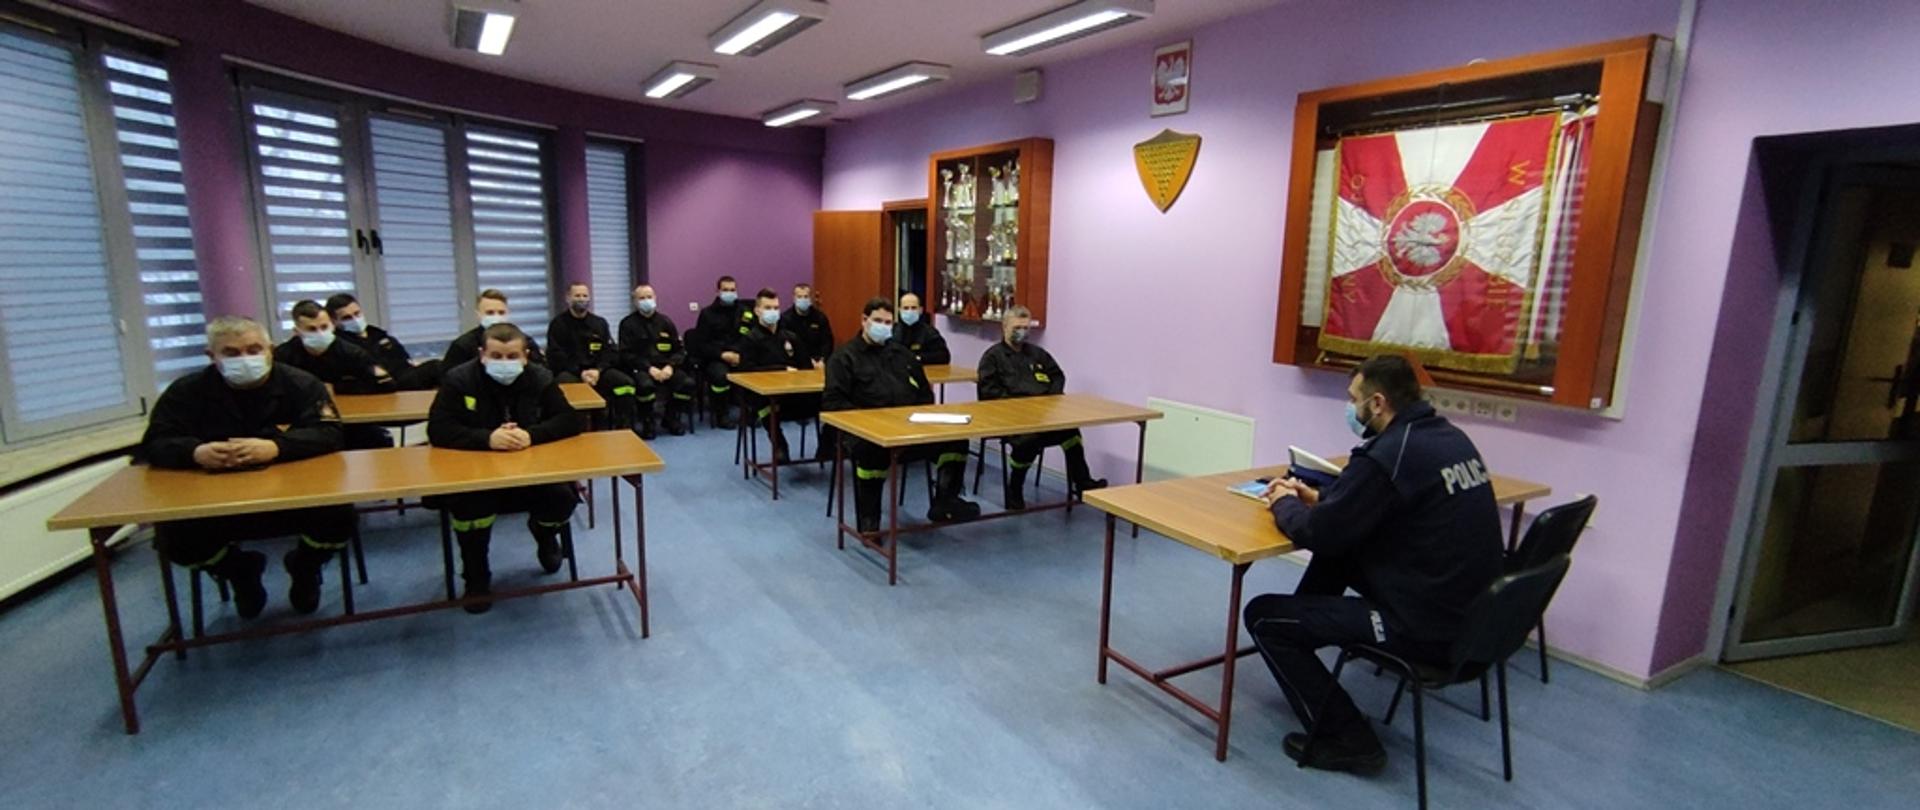 Sala Narad Komendy Powiatowej PSP we Włoszczowie, strażacy uczestniczący w szkoleniu w umundurowaniu koszarowym siedzą przy stolikach, frontem do nich siedzi policjant prowadzący szkolenie. 